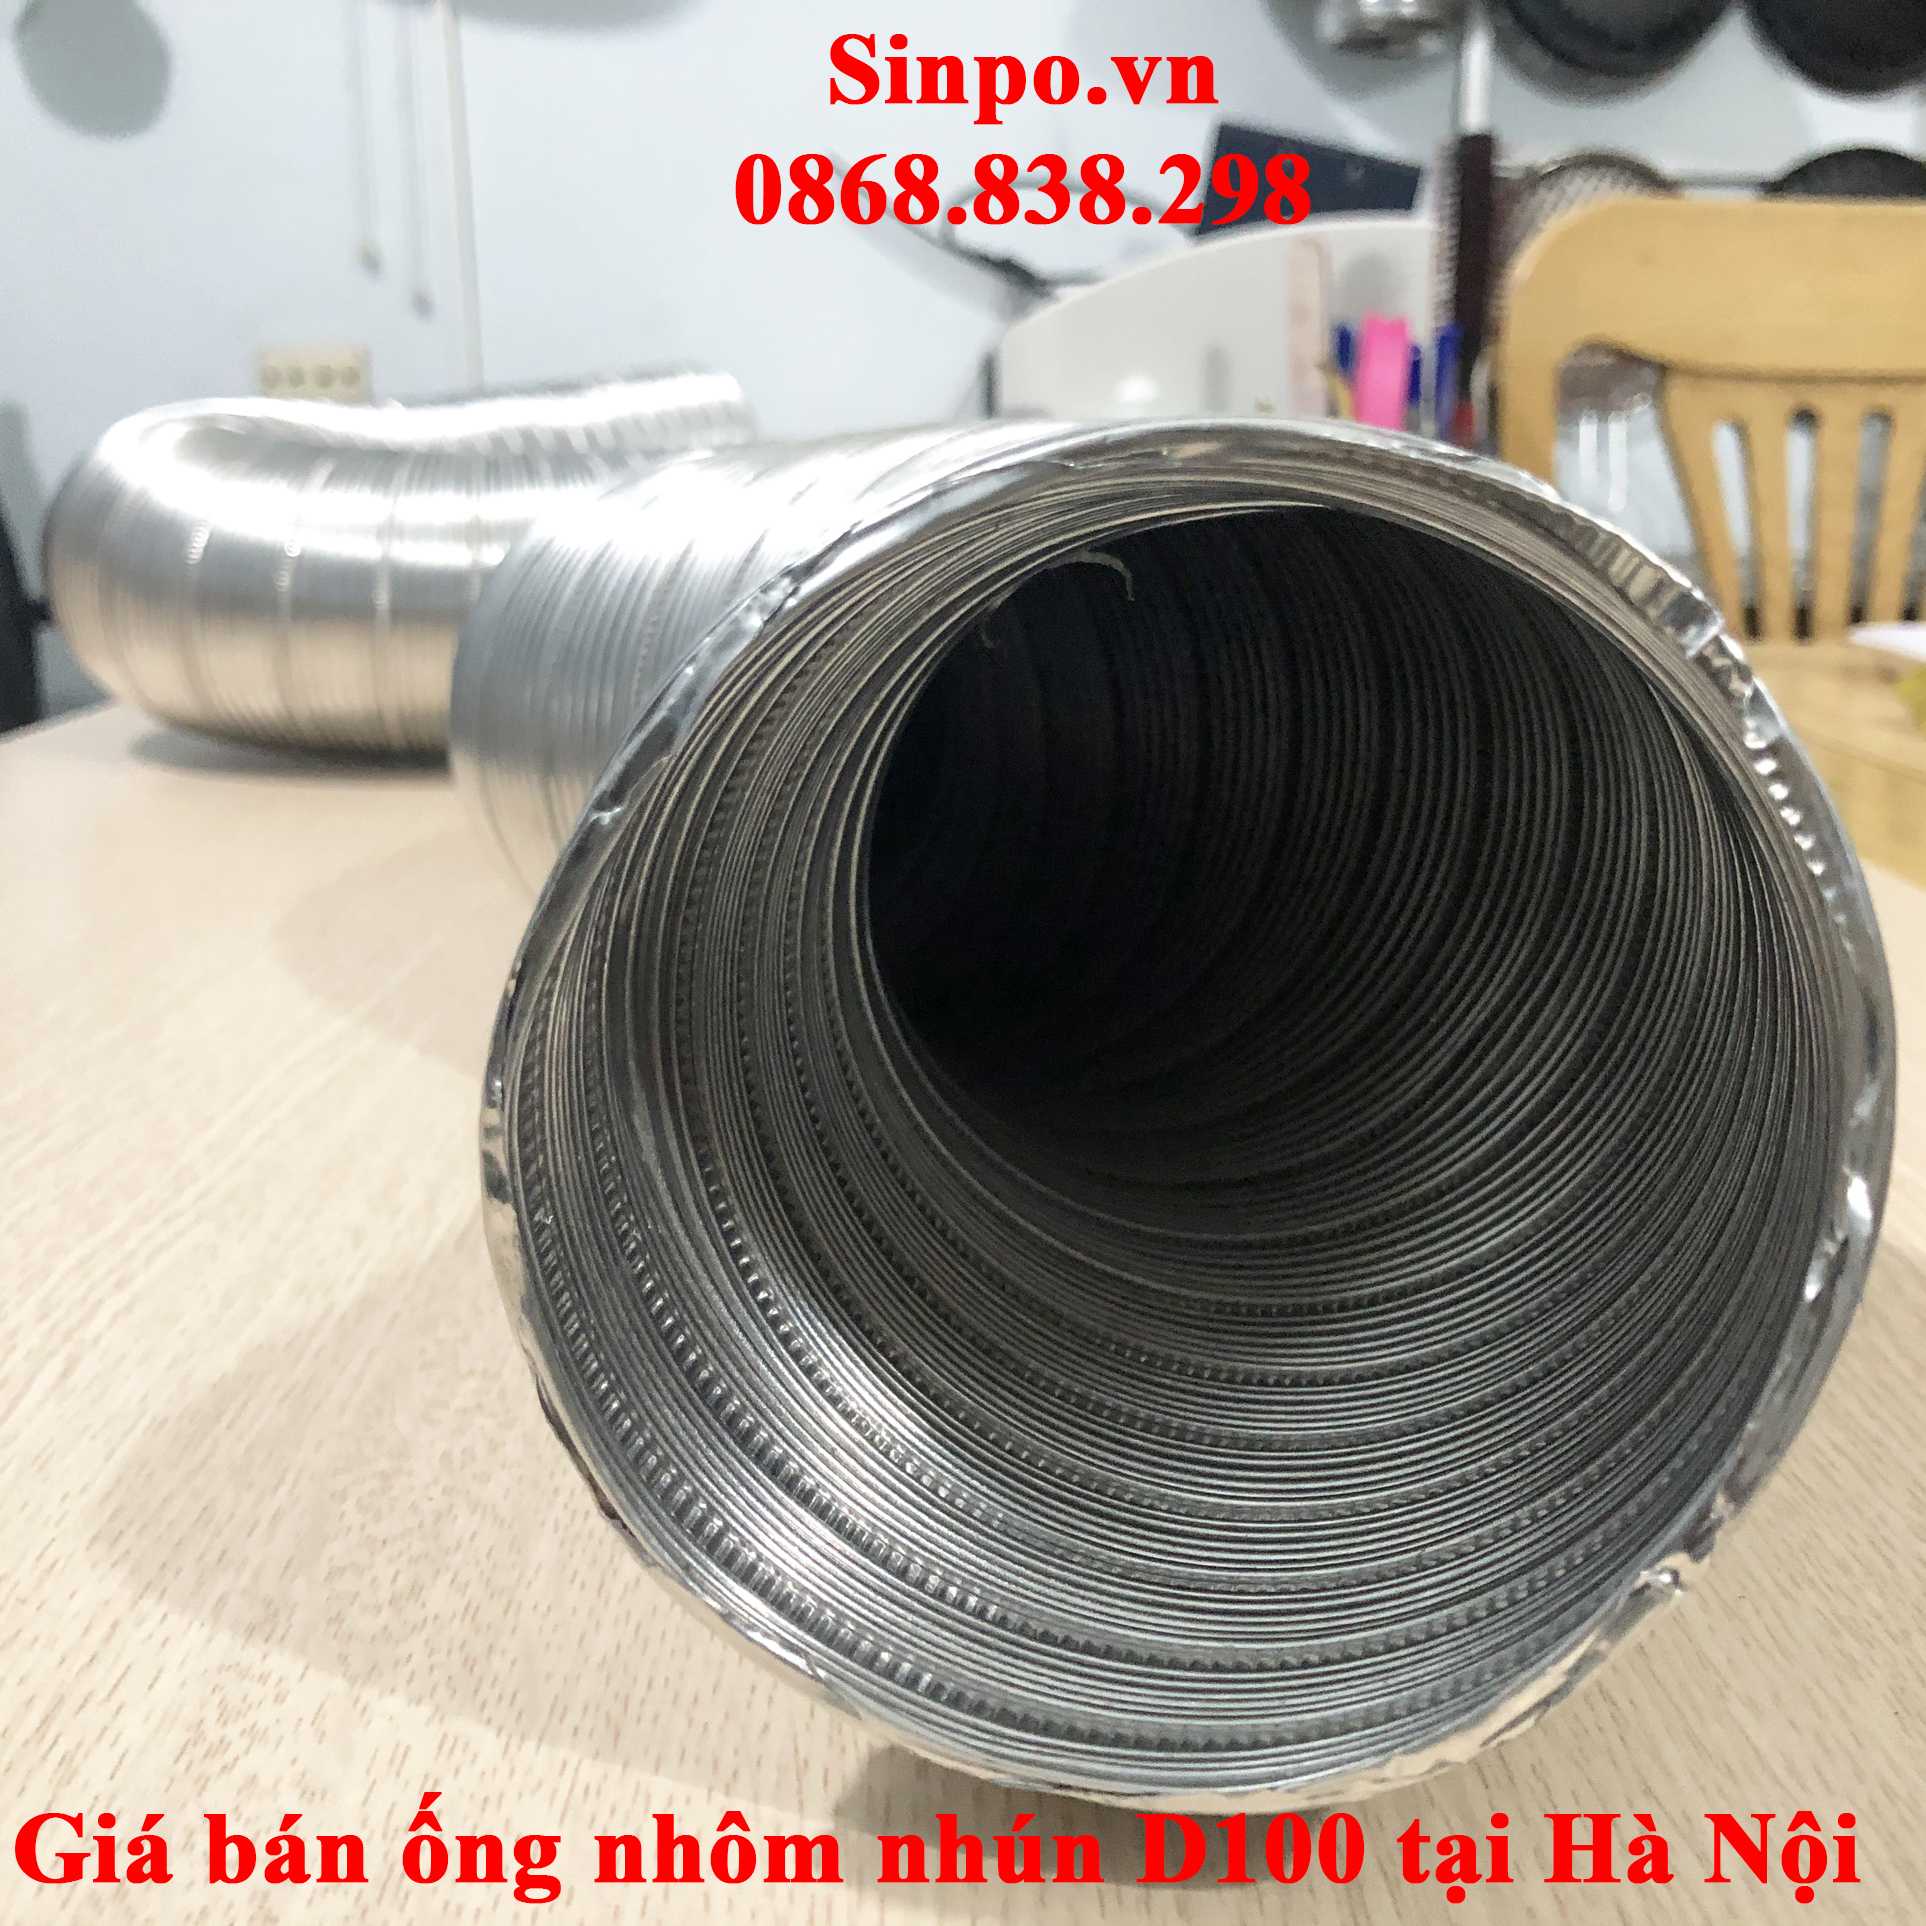 Giá bán ống nhôm nhún D100 mm tại Hà Nội